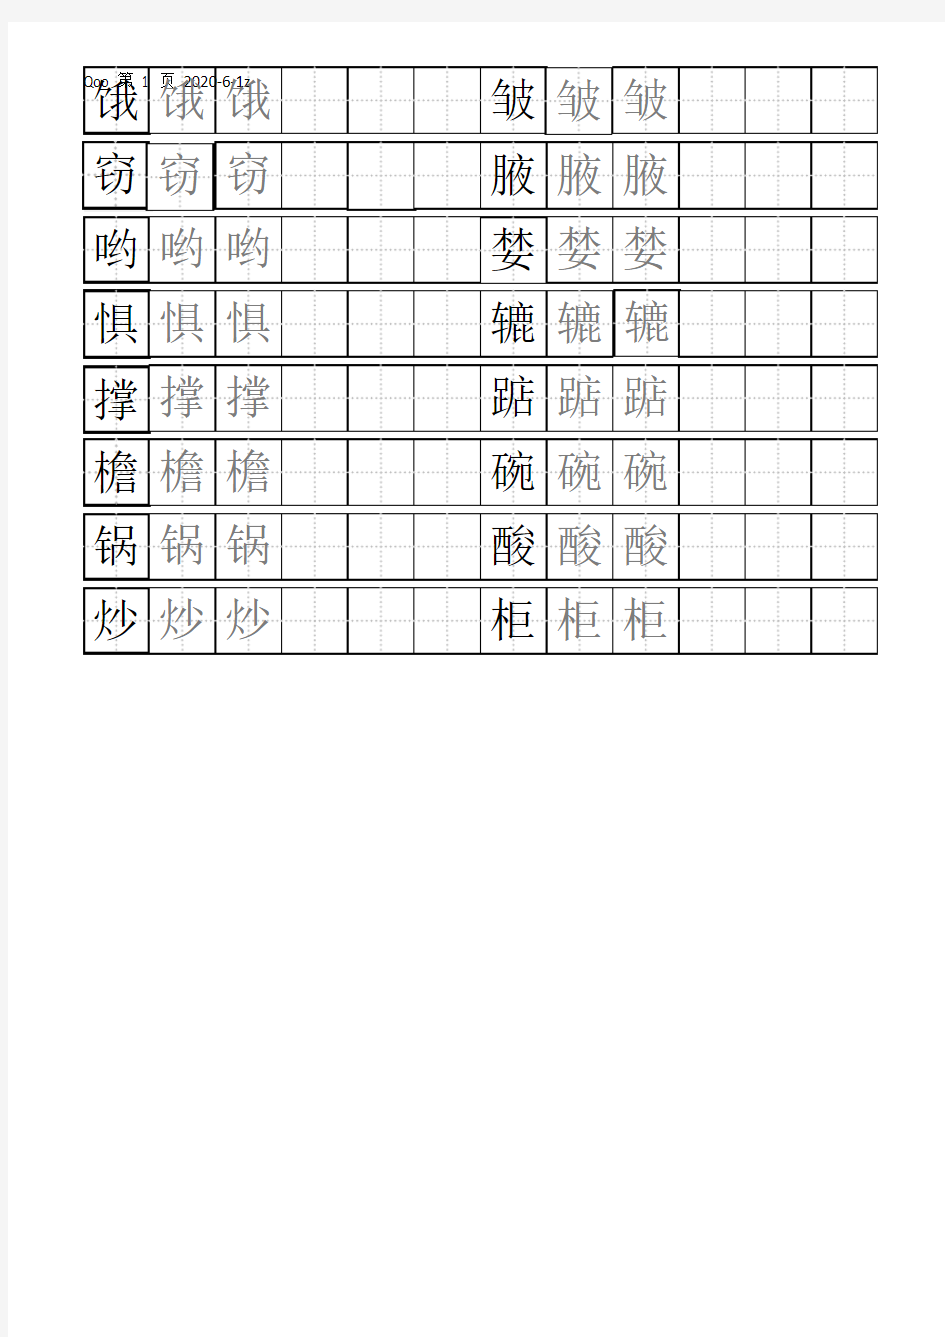 硬笔书法练习田字格模板-标准A4打印版